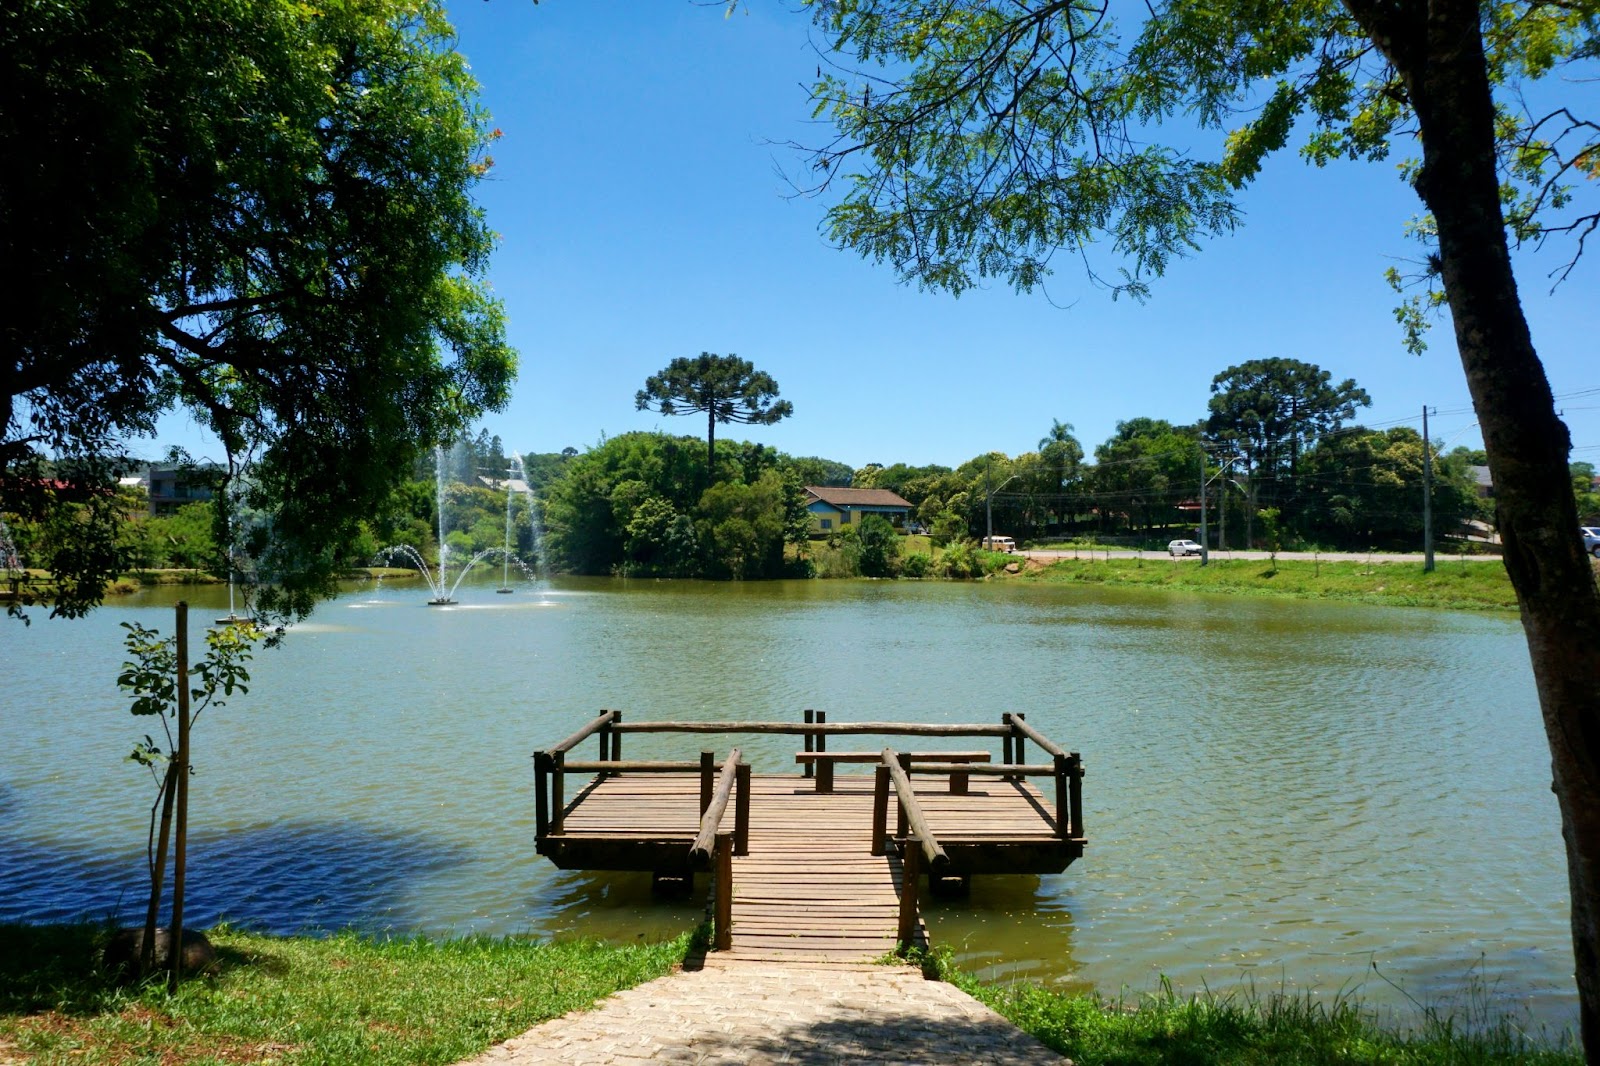 Lago do Parque da Uva com pequeno deck de madeira. Árvores de diferentes tamanhos, gramado e céu azul e limpo.